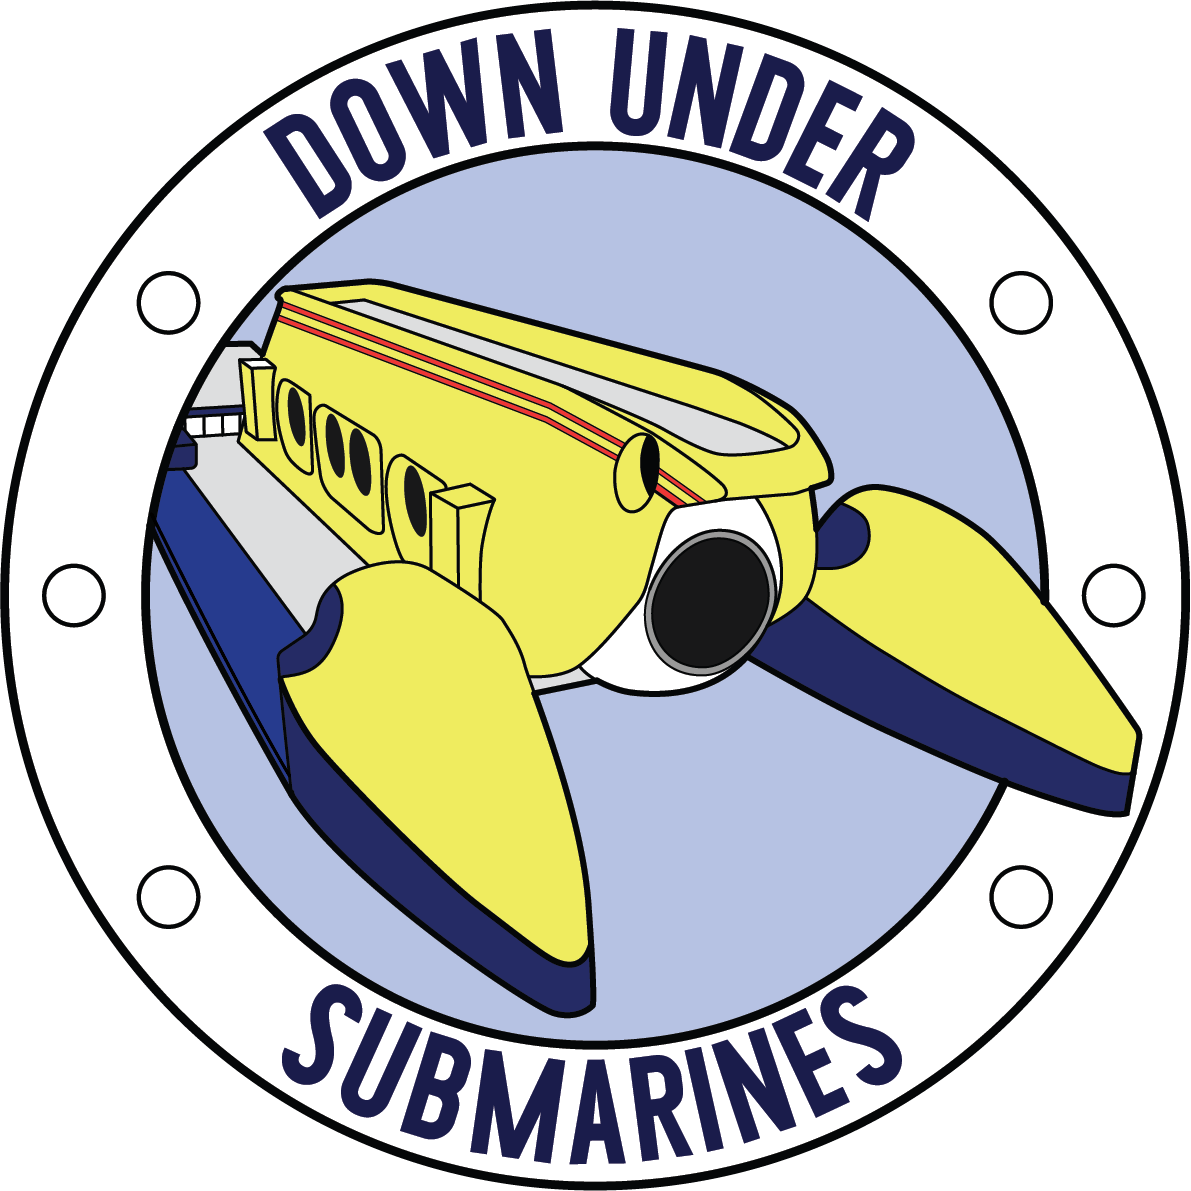 Down Under Submarines